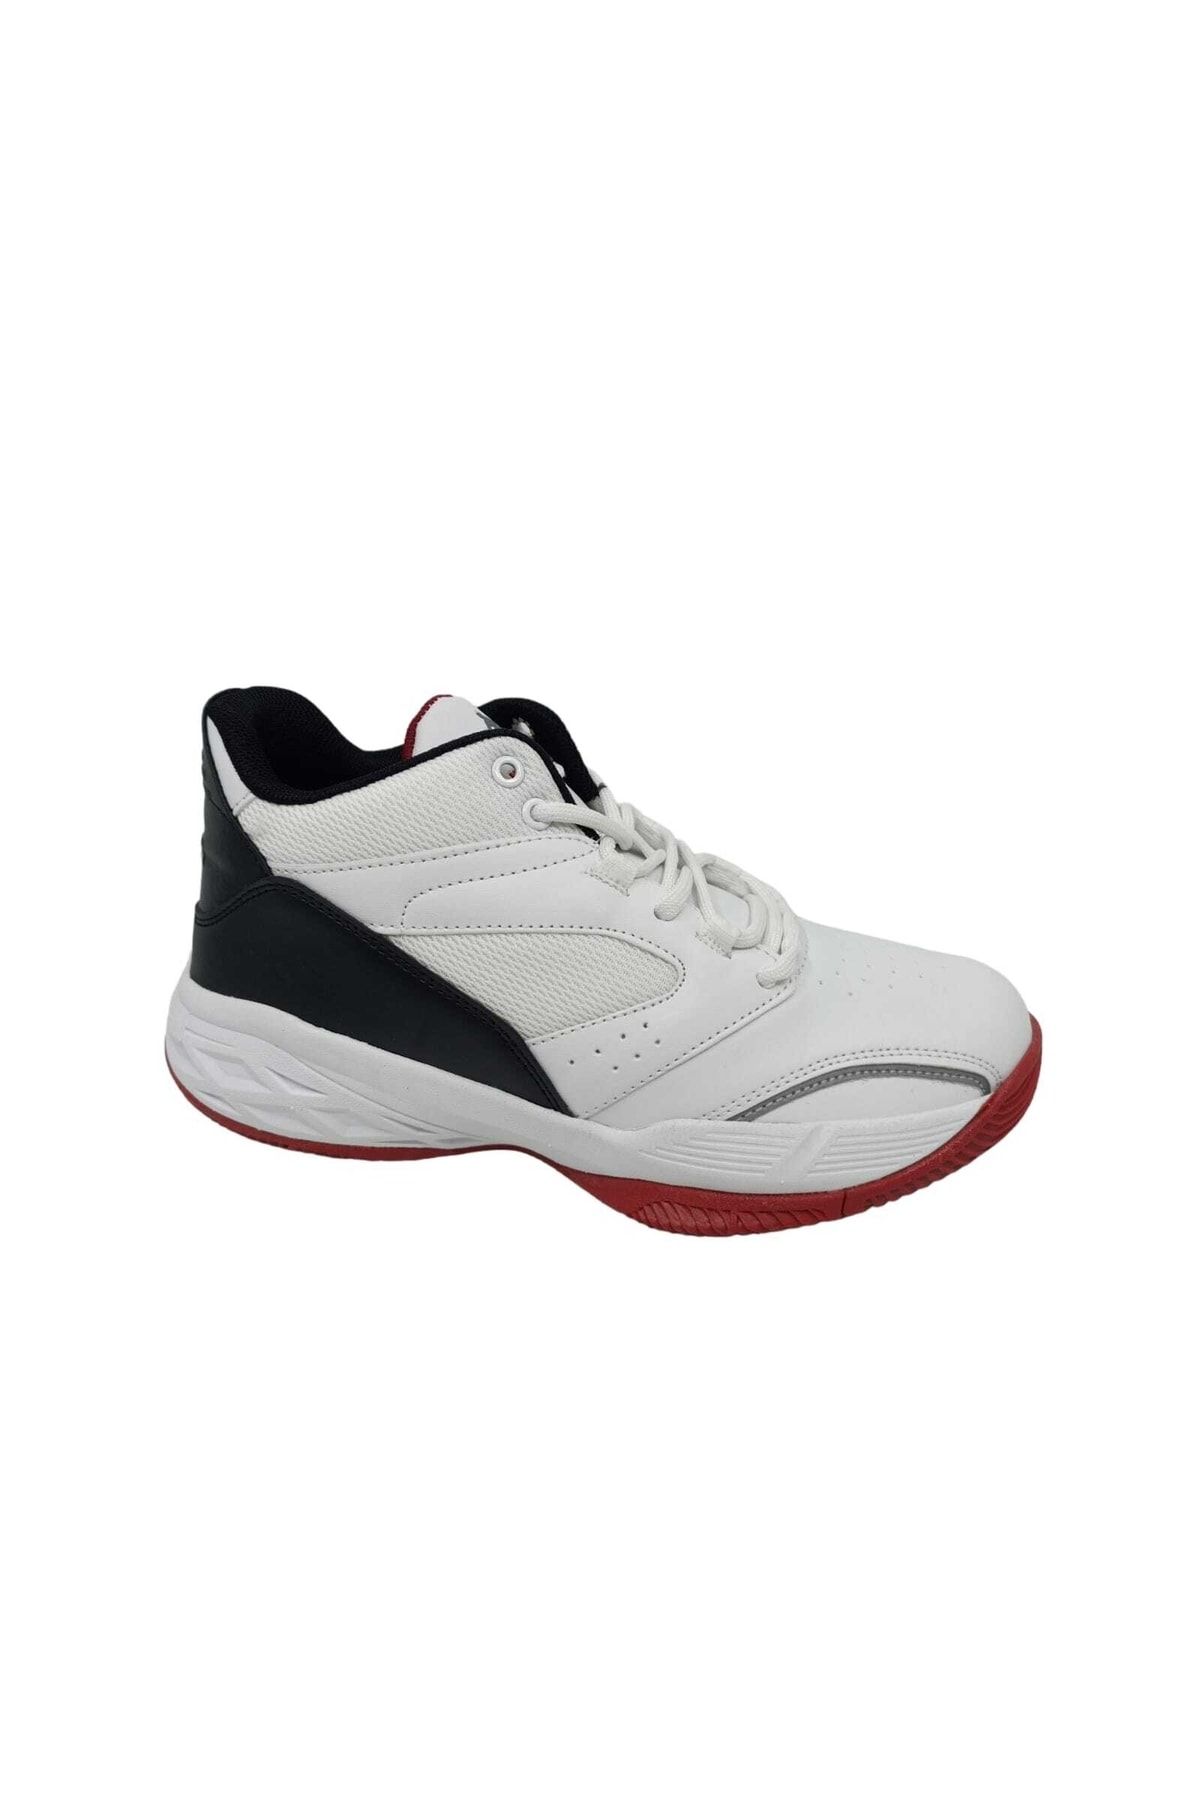 Jump 27722 Beyaz - Siyah - Kırmızı Uniseks Basketbol Spor Ayakkabısı